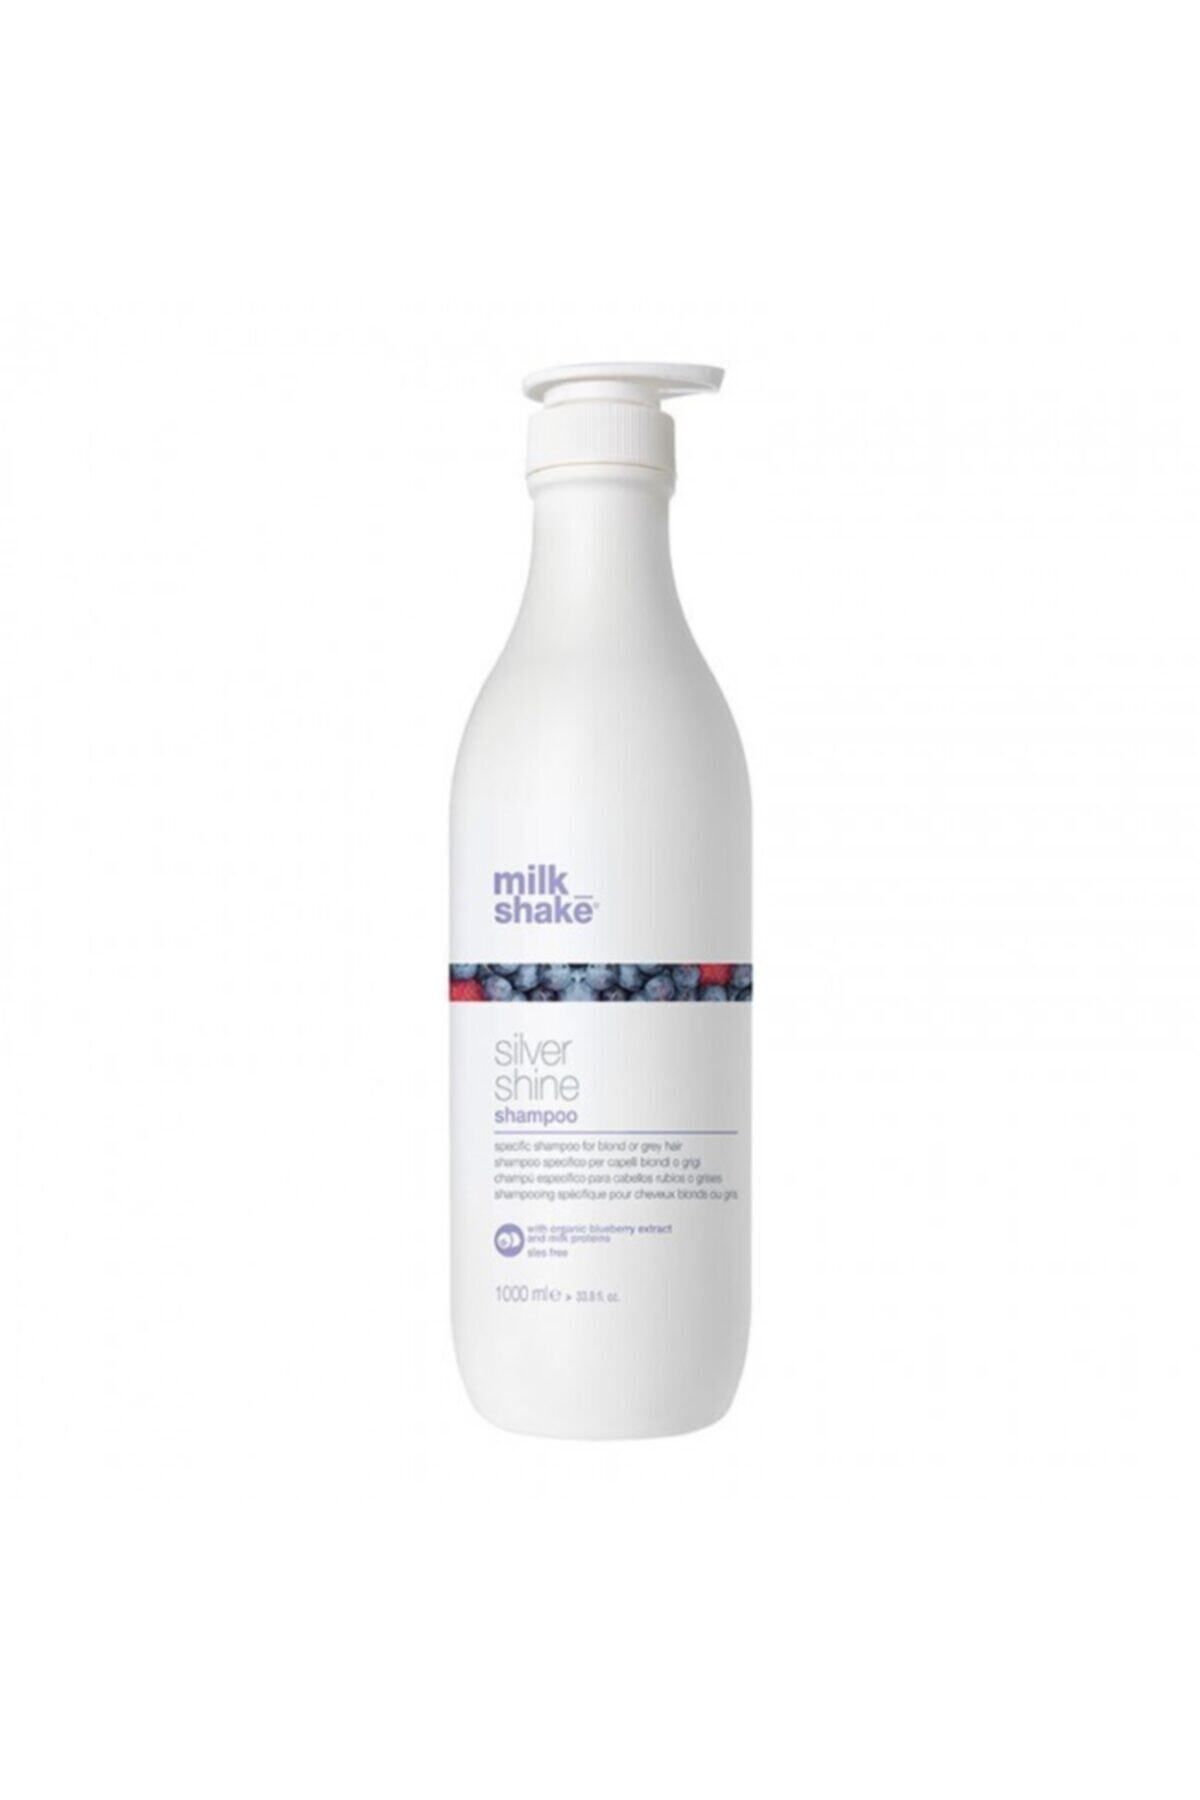 Milkshake Milk Shake Silver Shine Beyaz Gri Ve Platin Saçlar Için Şampuan 1000 ml